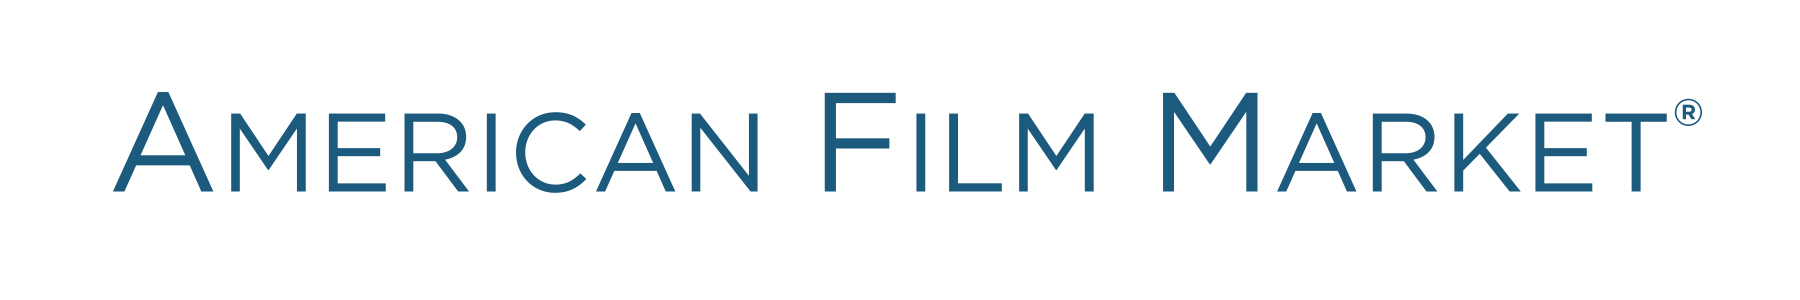 afm_blue logo